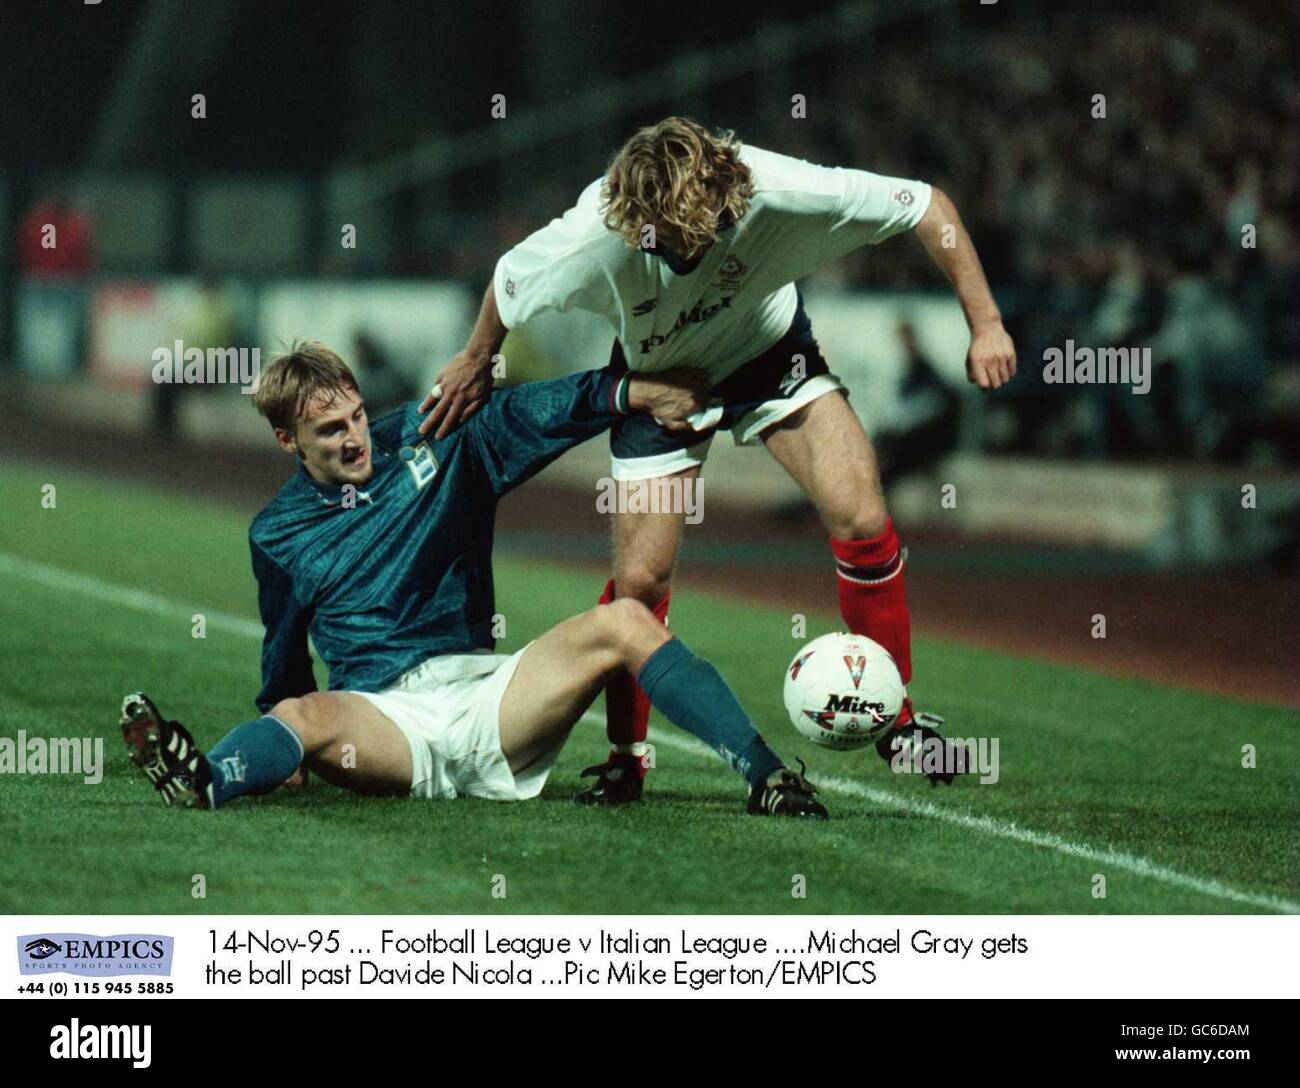 14-Nov-95, Football League contro Italian League, Michael Gray ottiene la palla oltre Davide Nicola Foto Stock